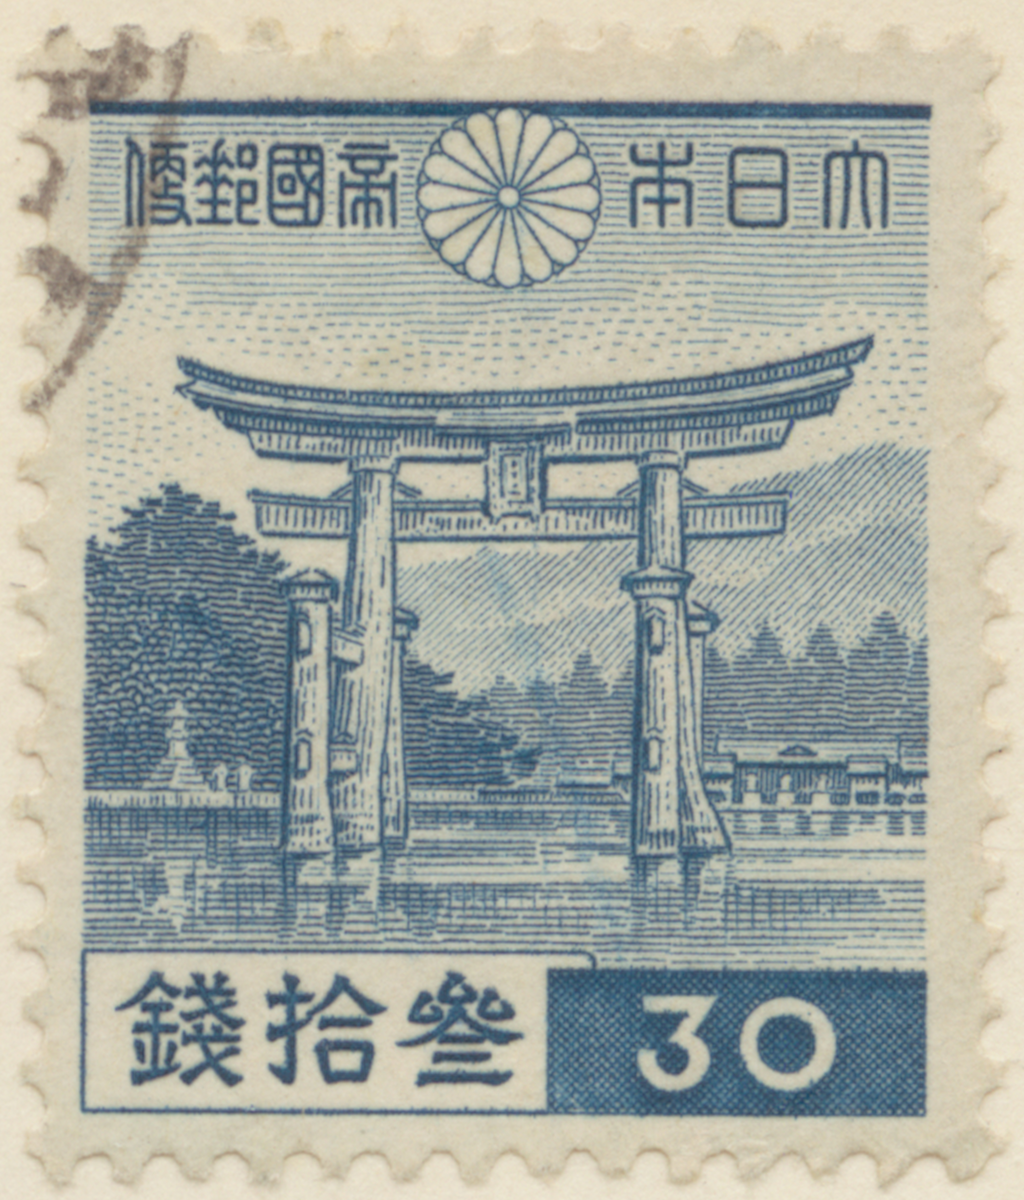 Frimärke ur Gösta Bodmans filatelistiska motivsamling, påbörjad 1950.
Frimärke från Japan, 1937. Motiv av Portalen Mija-Jima Torii, vid Itsukushima mausoleum